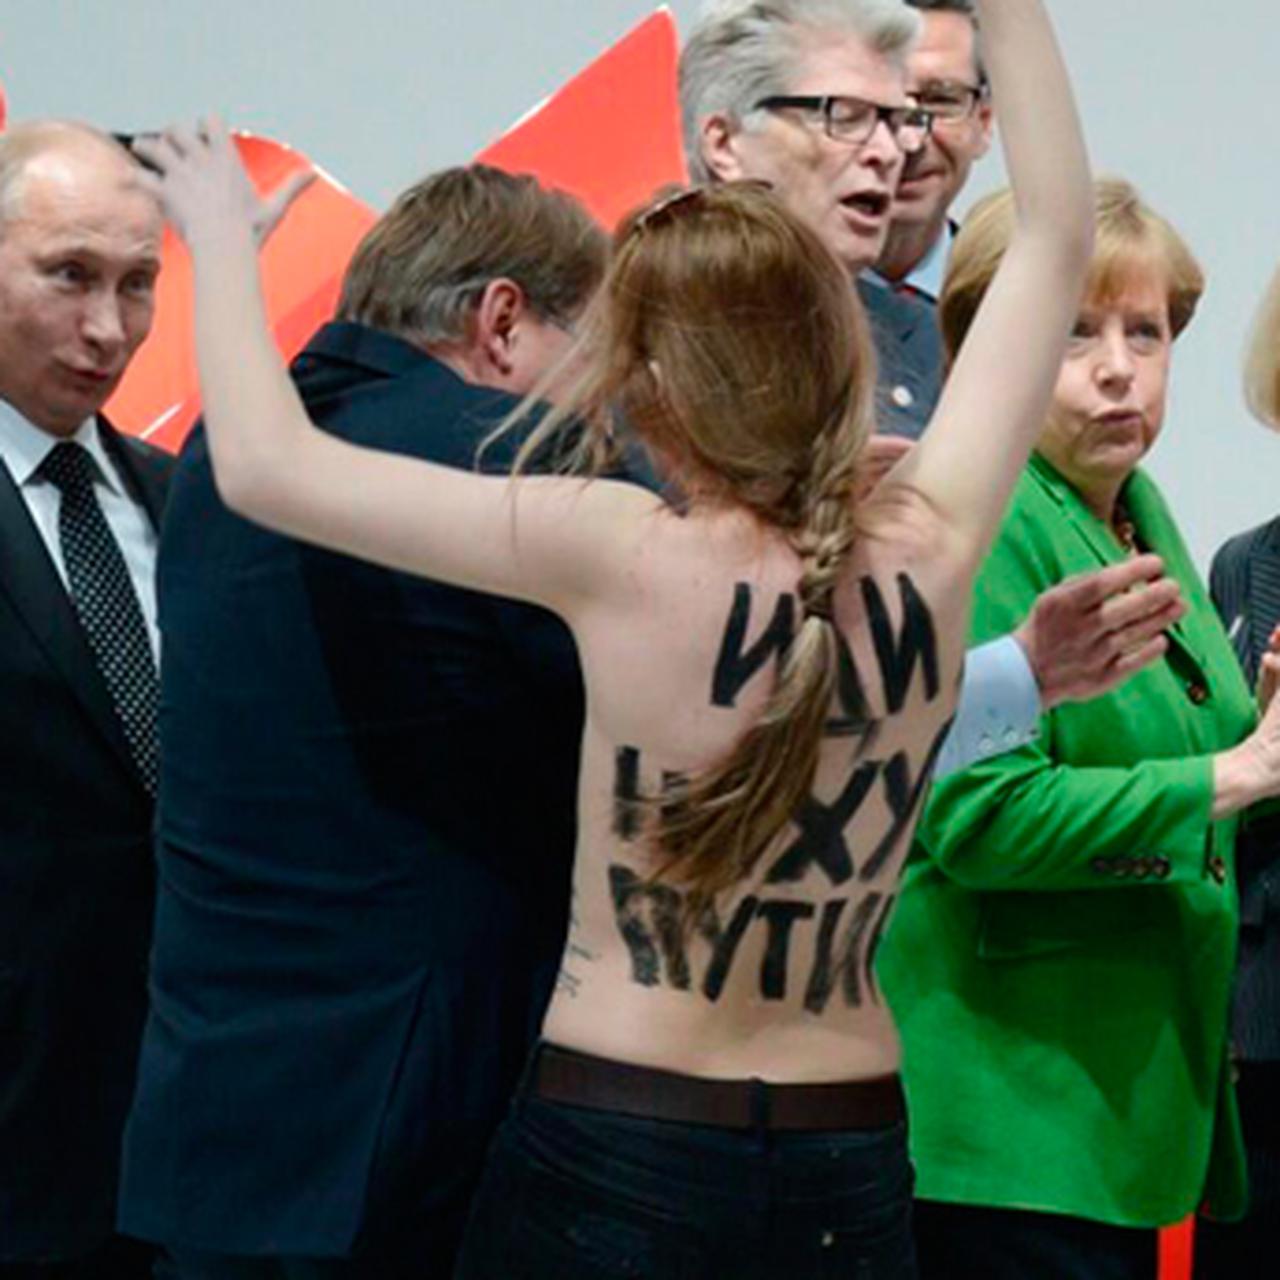 Путину понравилась голая акция девушек из FEMEN - Страсти